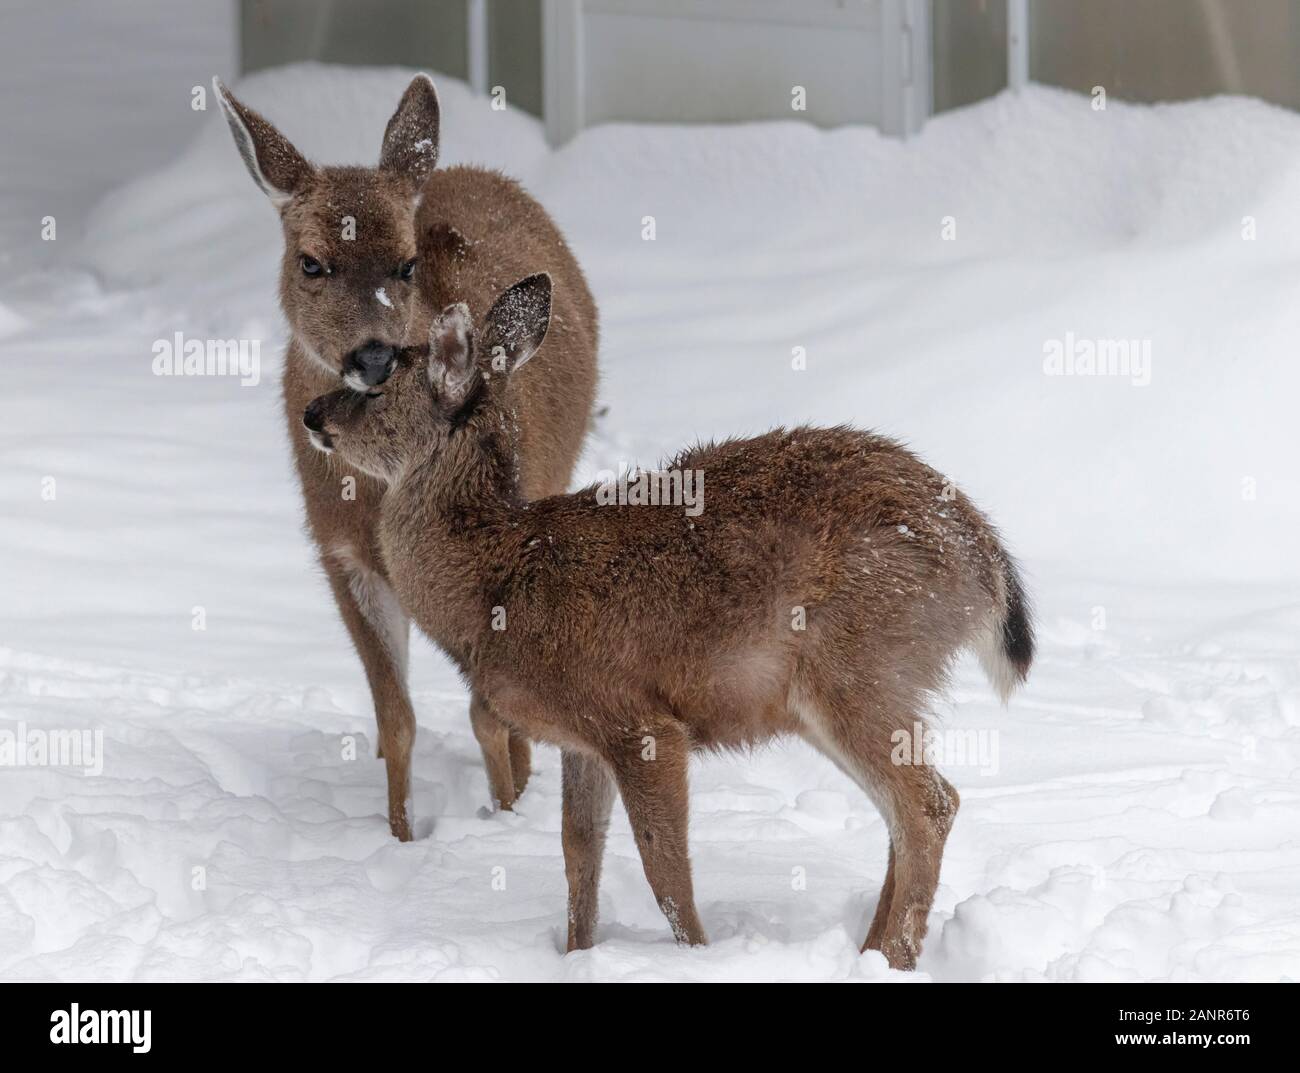 In piedi nella neve, una femmina del cervo tende il suo fulvo, cura la pelliccia folta sulla sua testa (parte di una serra visibile dietro il cumulo di neve in background). Foto Stock